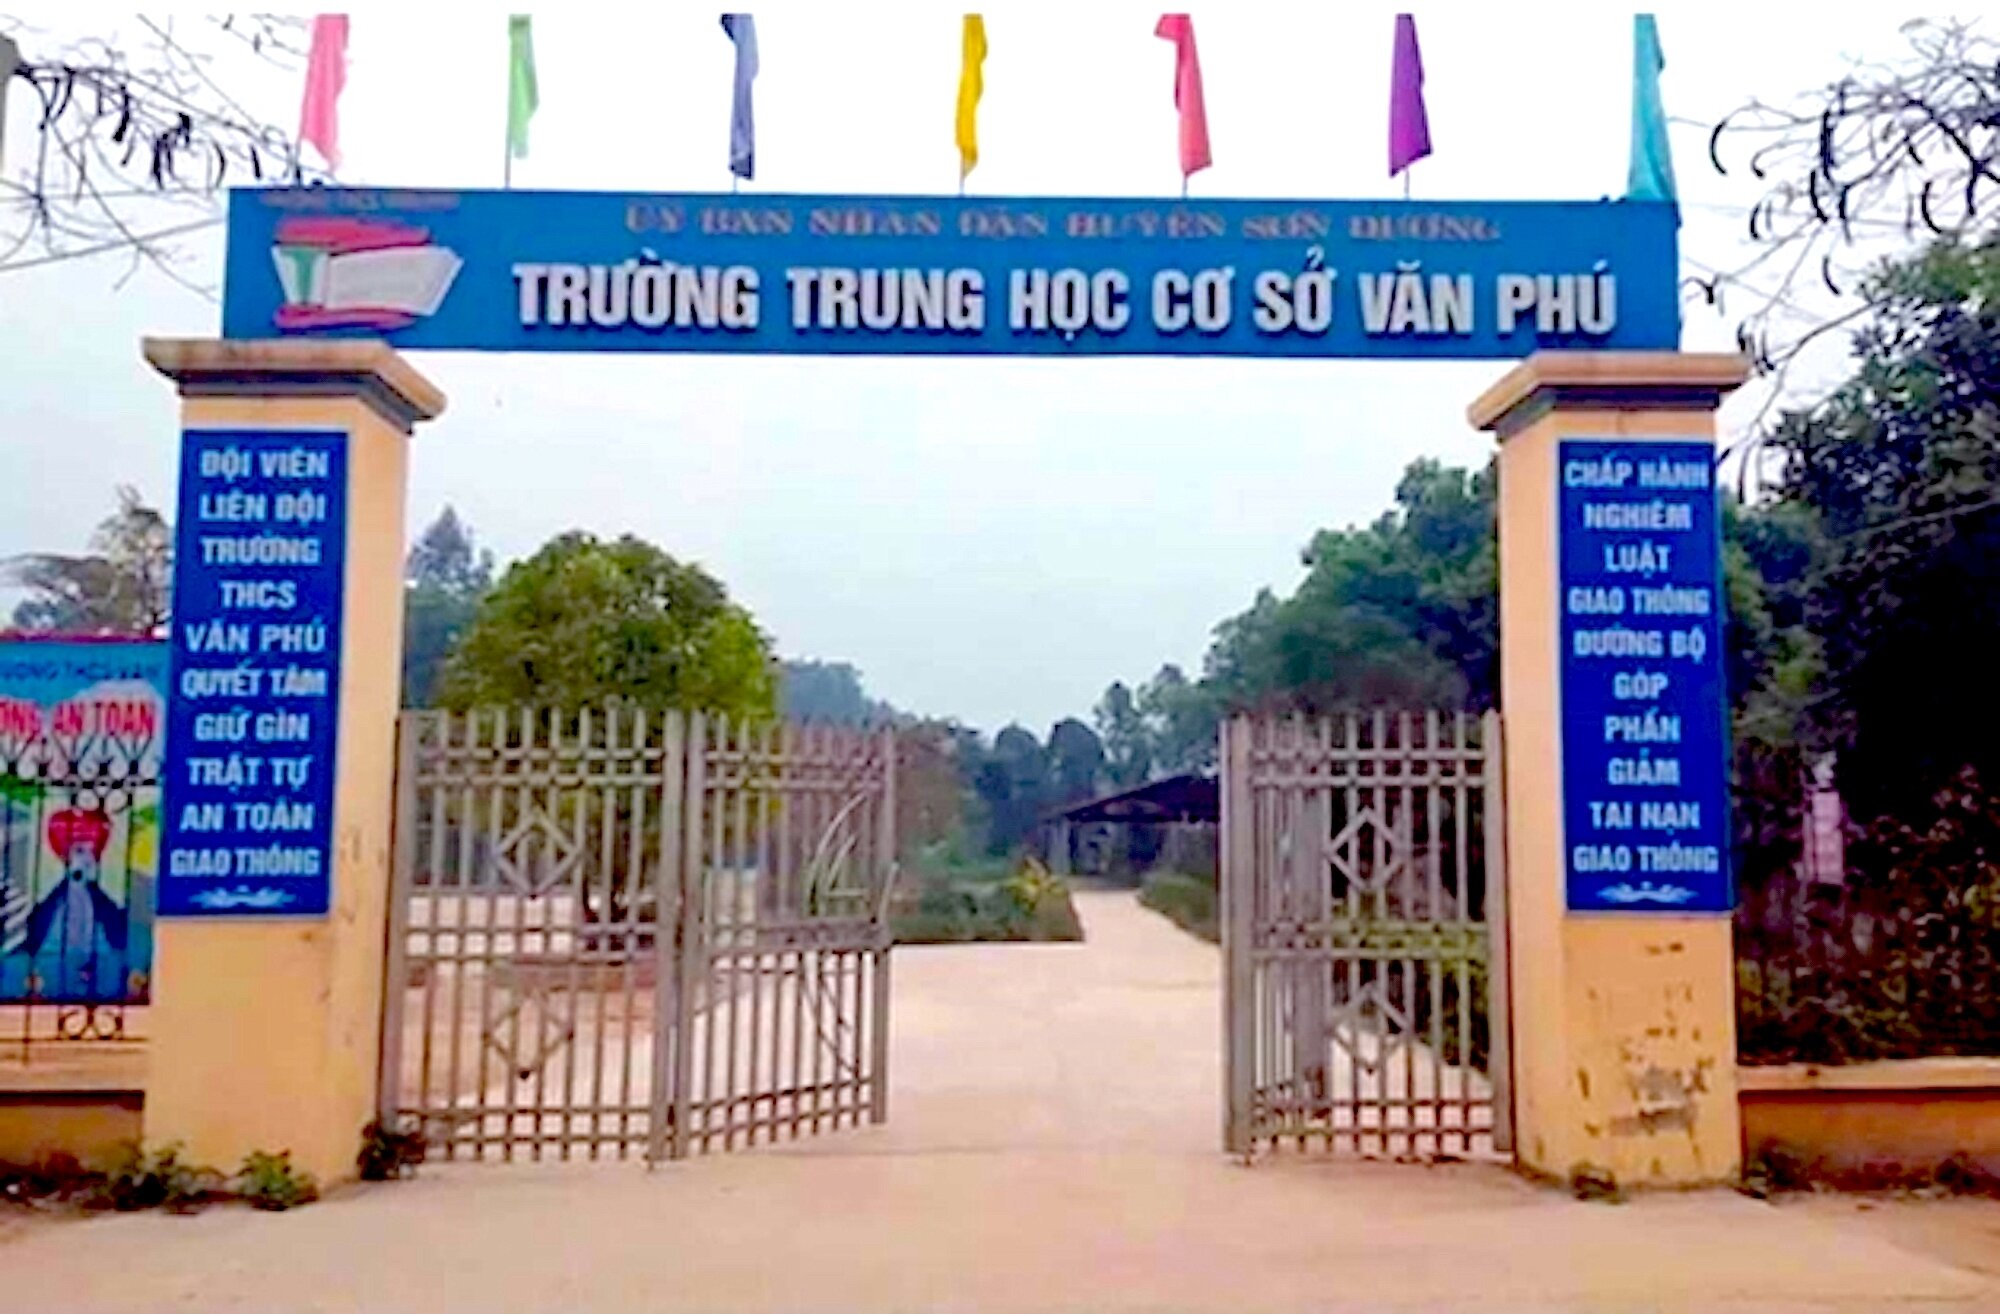 Trường THCS Văn Phú (Sơn Dương, Tuyên Quang) - nơi xảy ra sự việc cô giáo bị học sinh xúc phạm gây xôn xao dư luận.